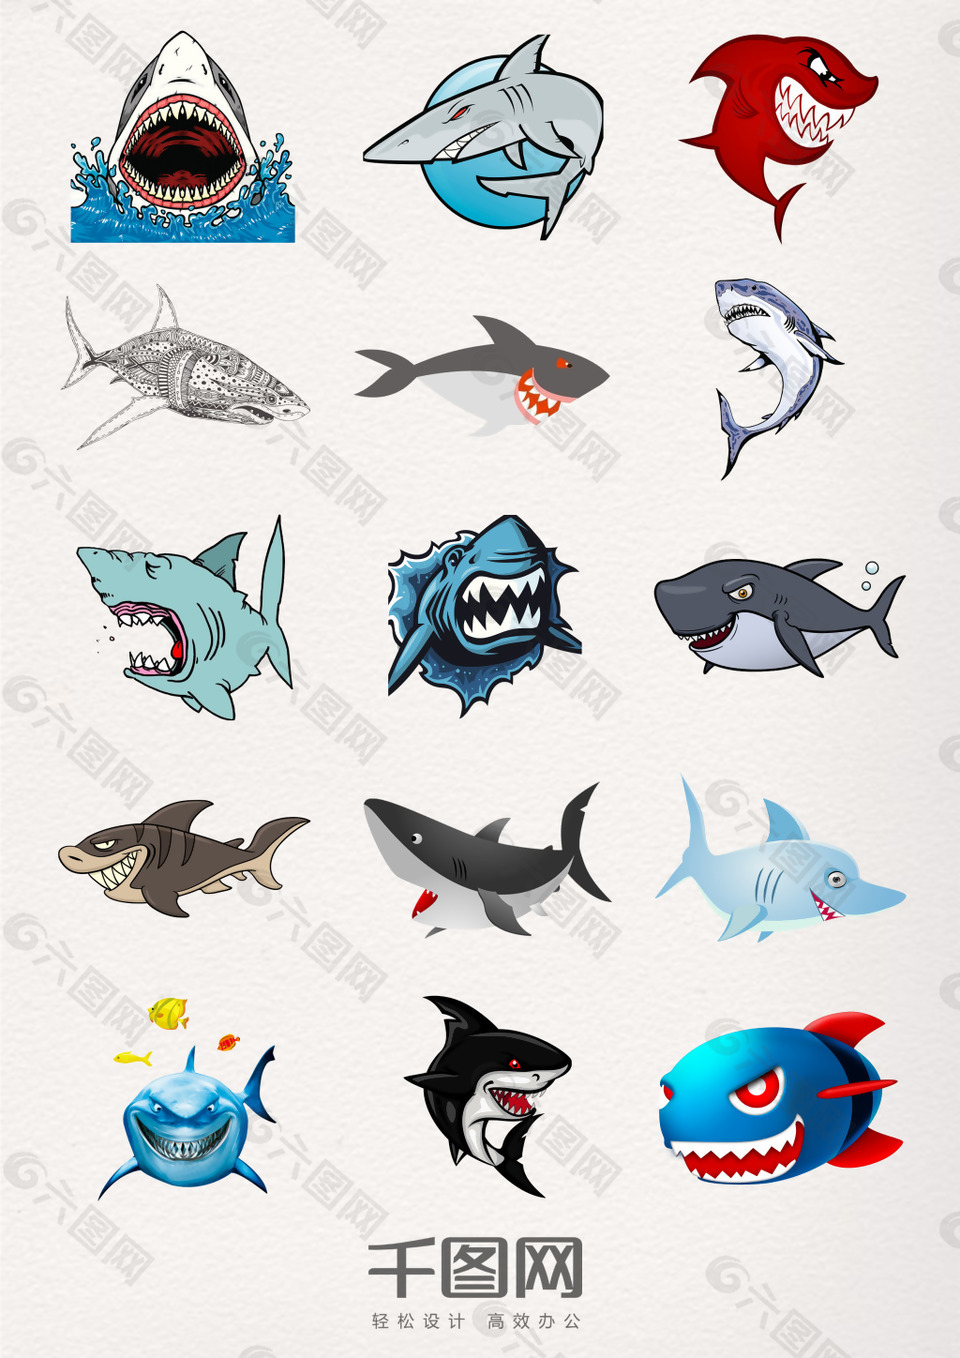 卡通版鲨鱼元素素材